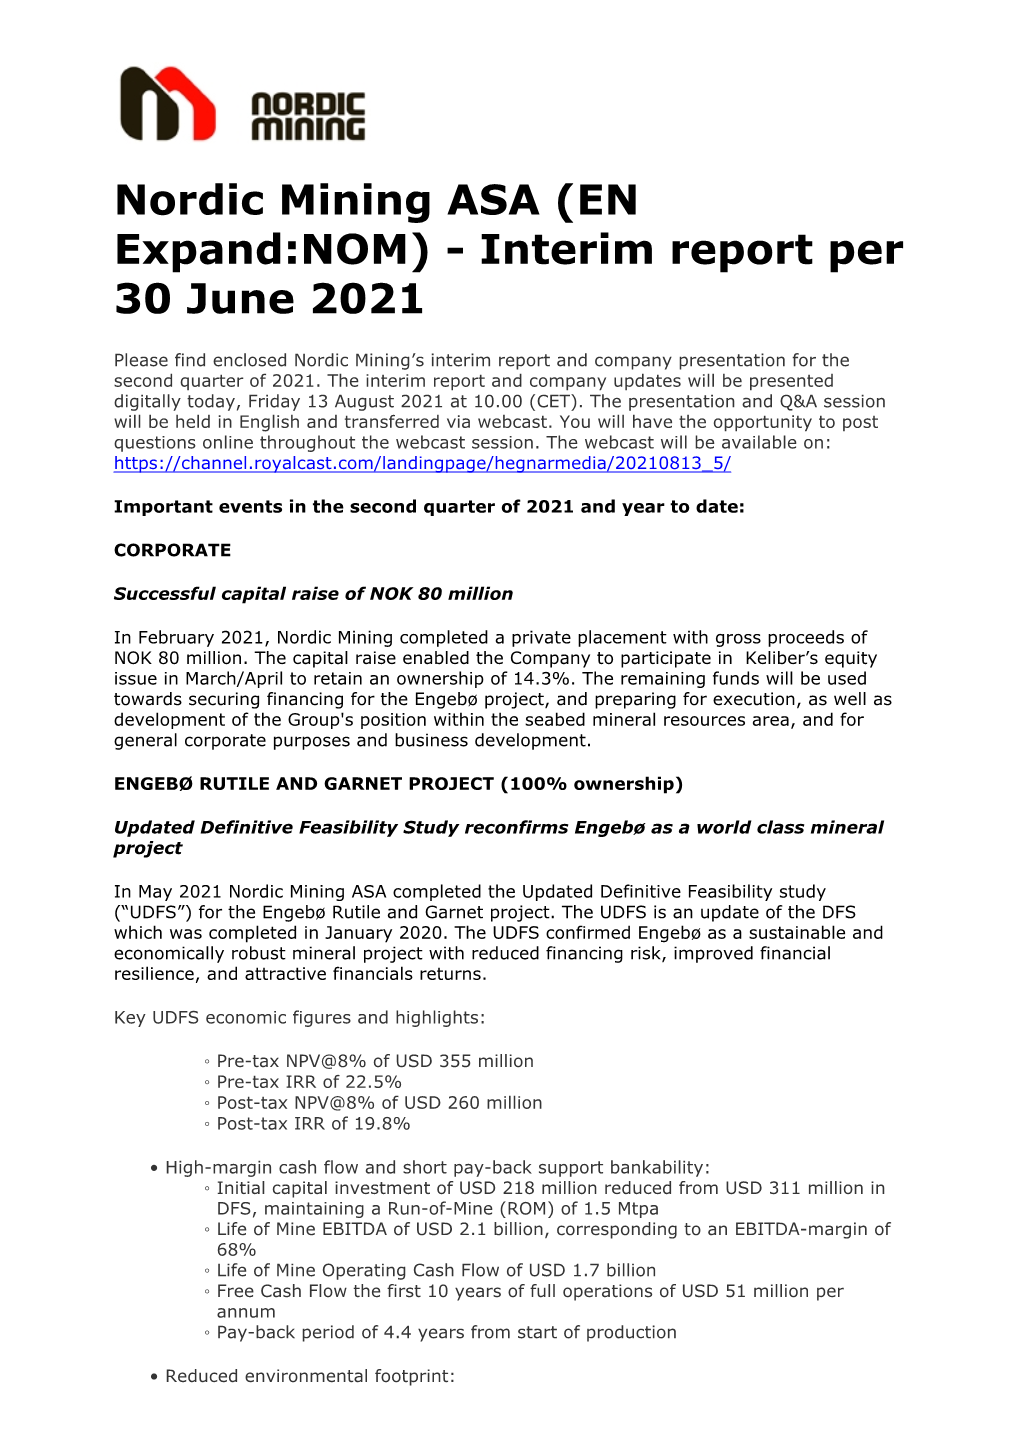 Nordic Mining ASA (EN Expand:NOM) - Interim Report Per 30 June 2021